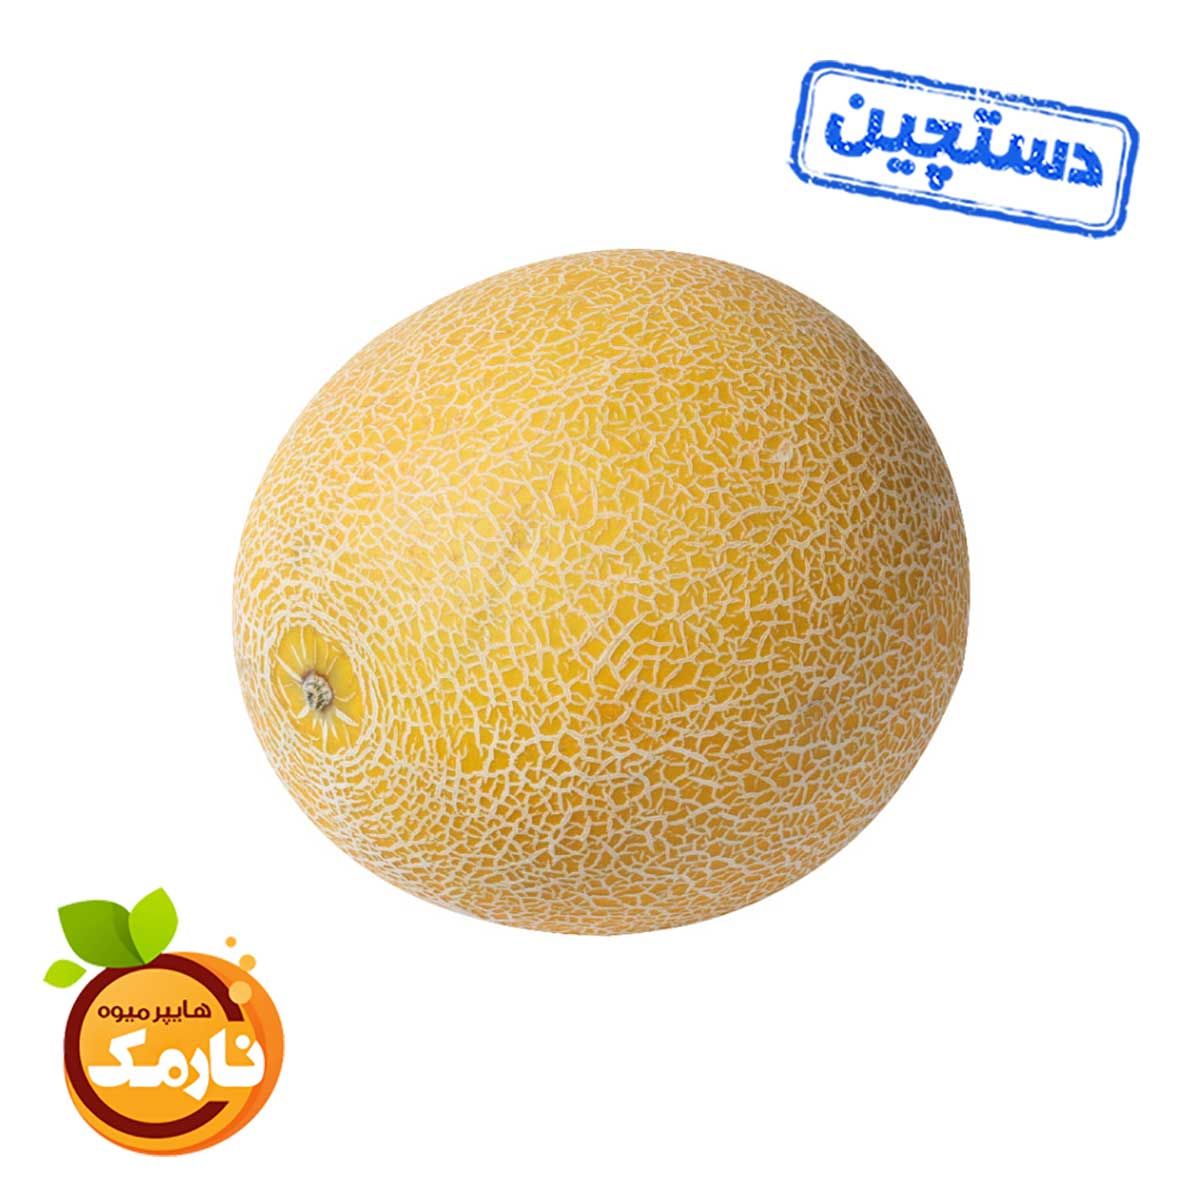 ملون دستچین هایپر میوه نارمک